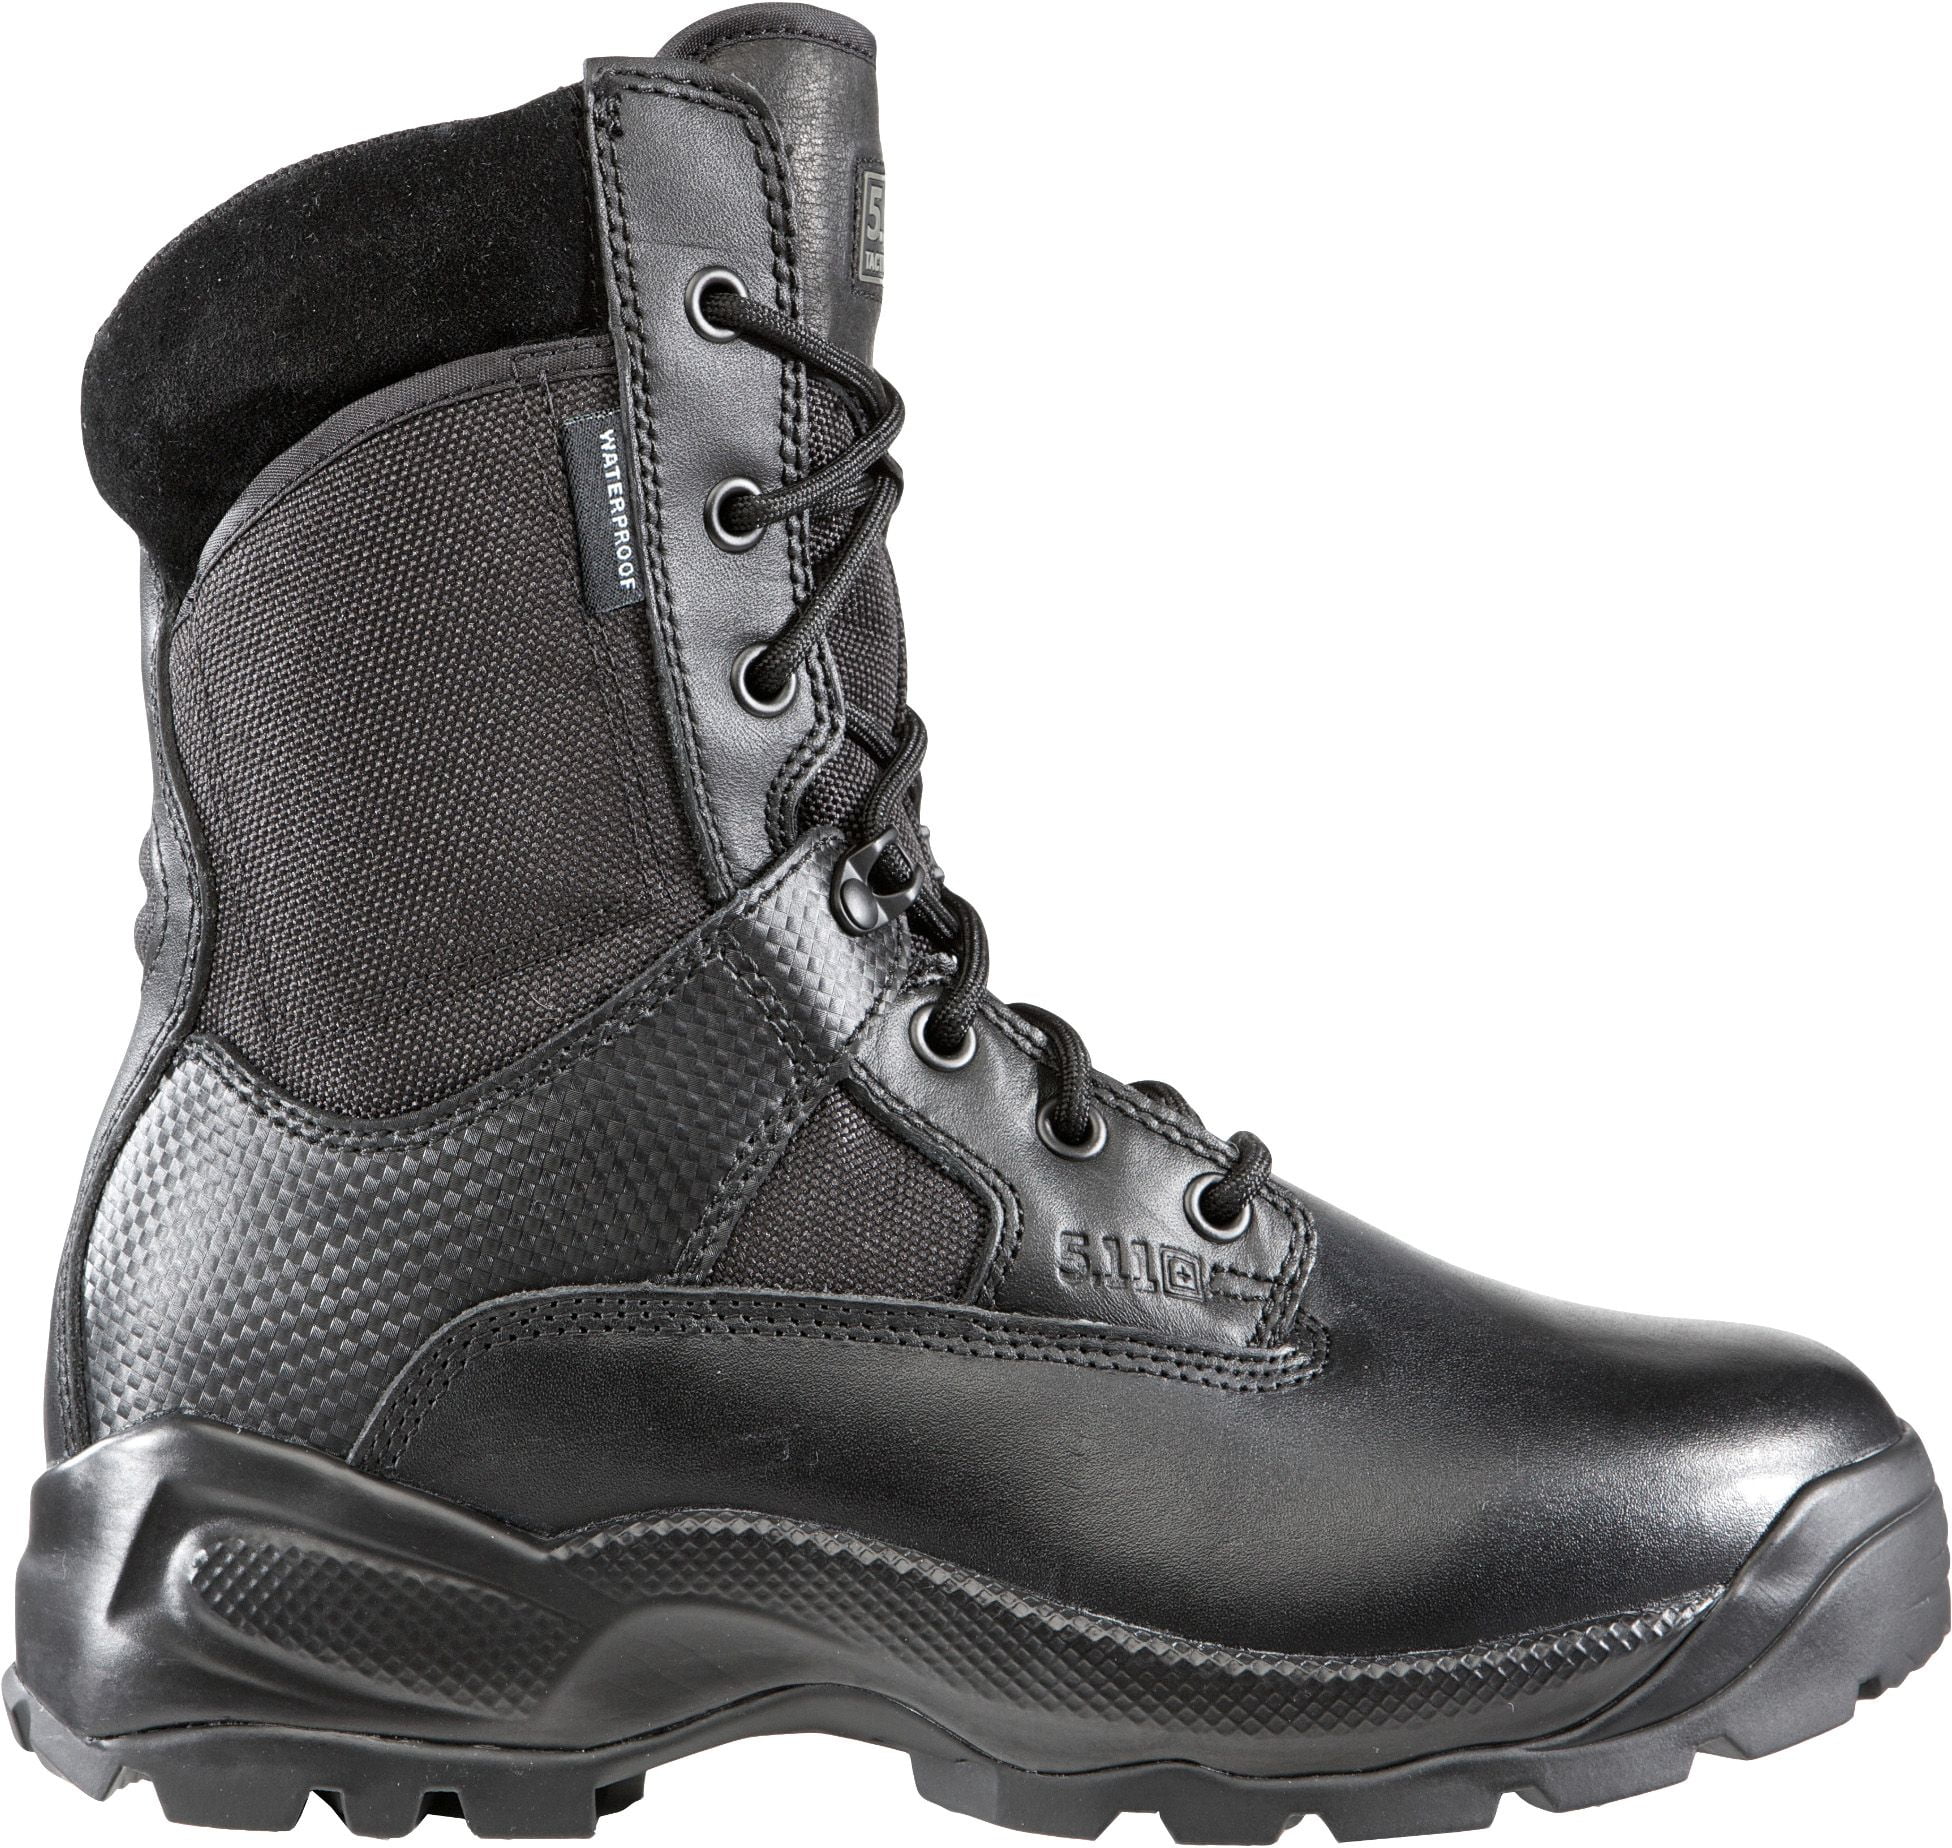 black tactical boots walmart